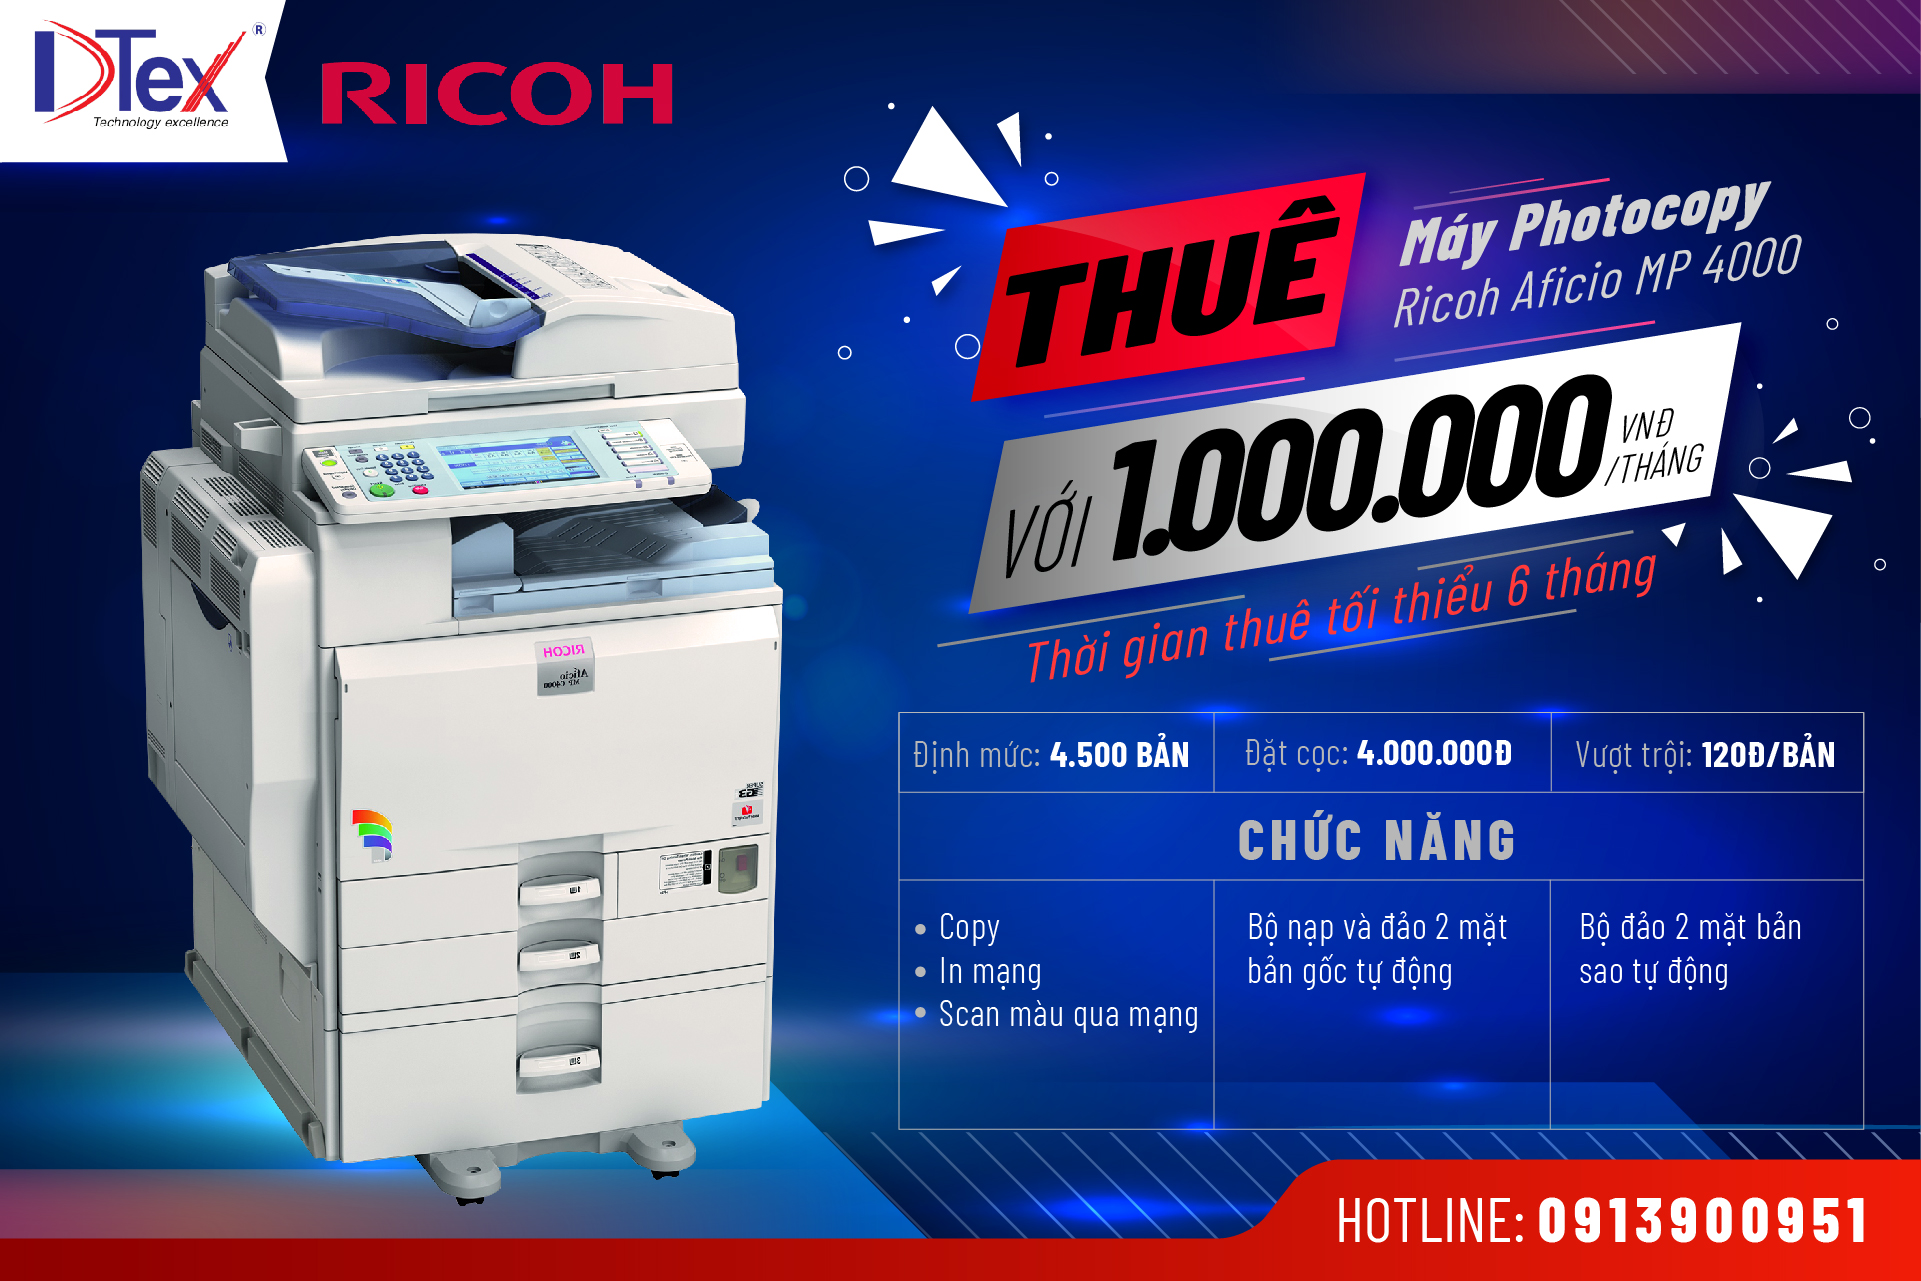 DTEX Báo giá dịch vụ cho thuê máy Photocopy Ricoh Aficio MP 4000 tại TPHCM